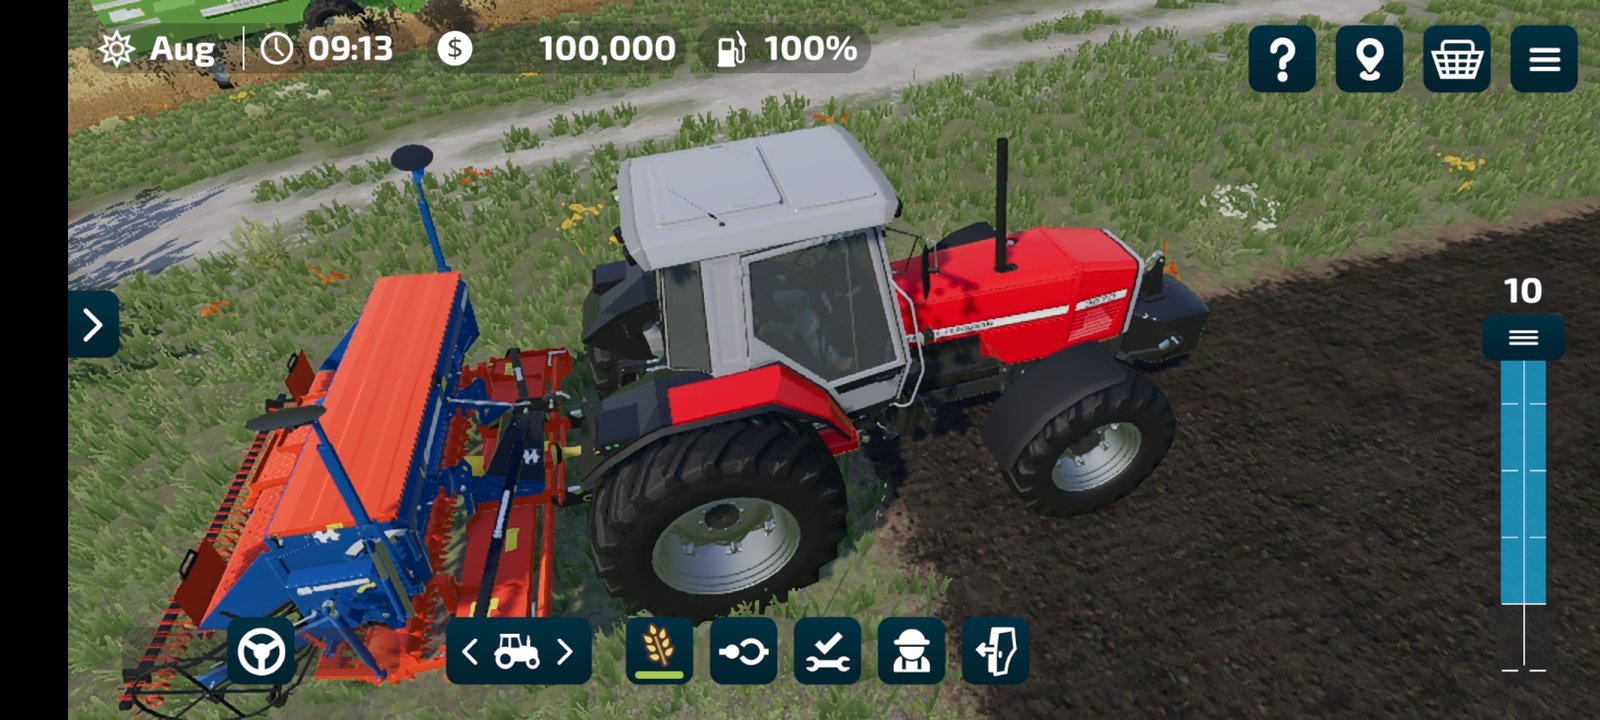 Farming Simulator 23 Update Mods Install, Fs 23 Apk v 0.0.0.10